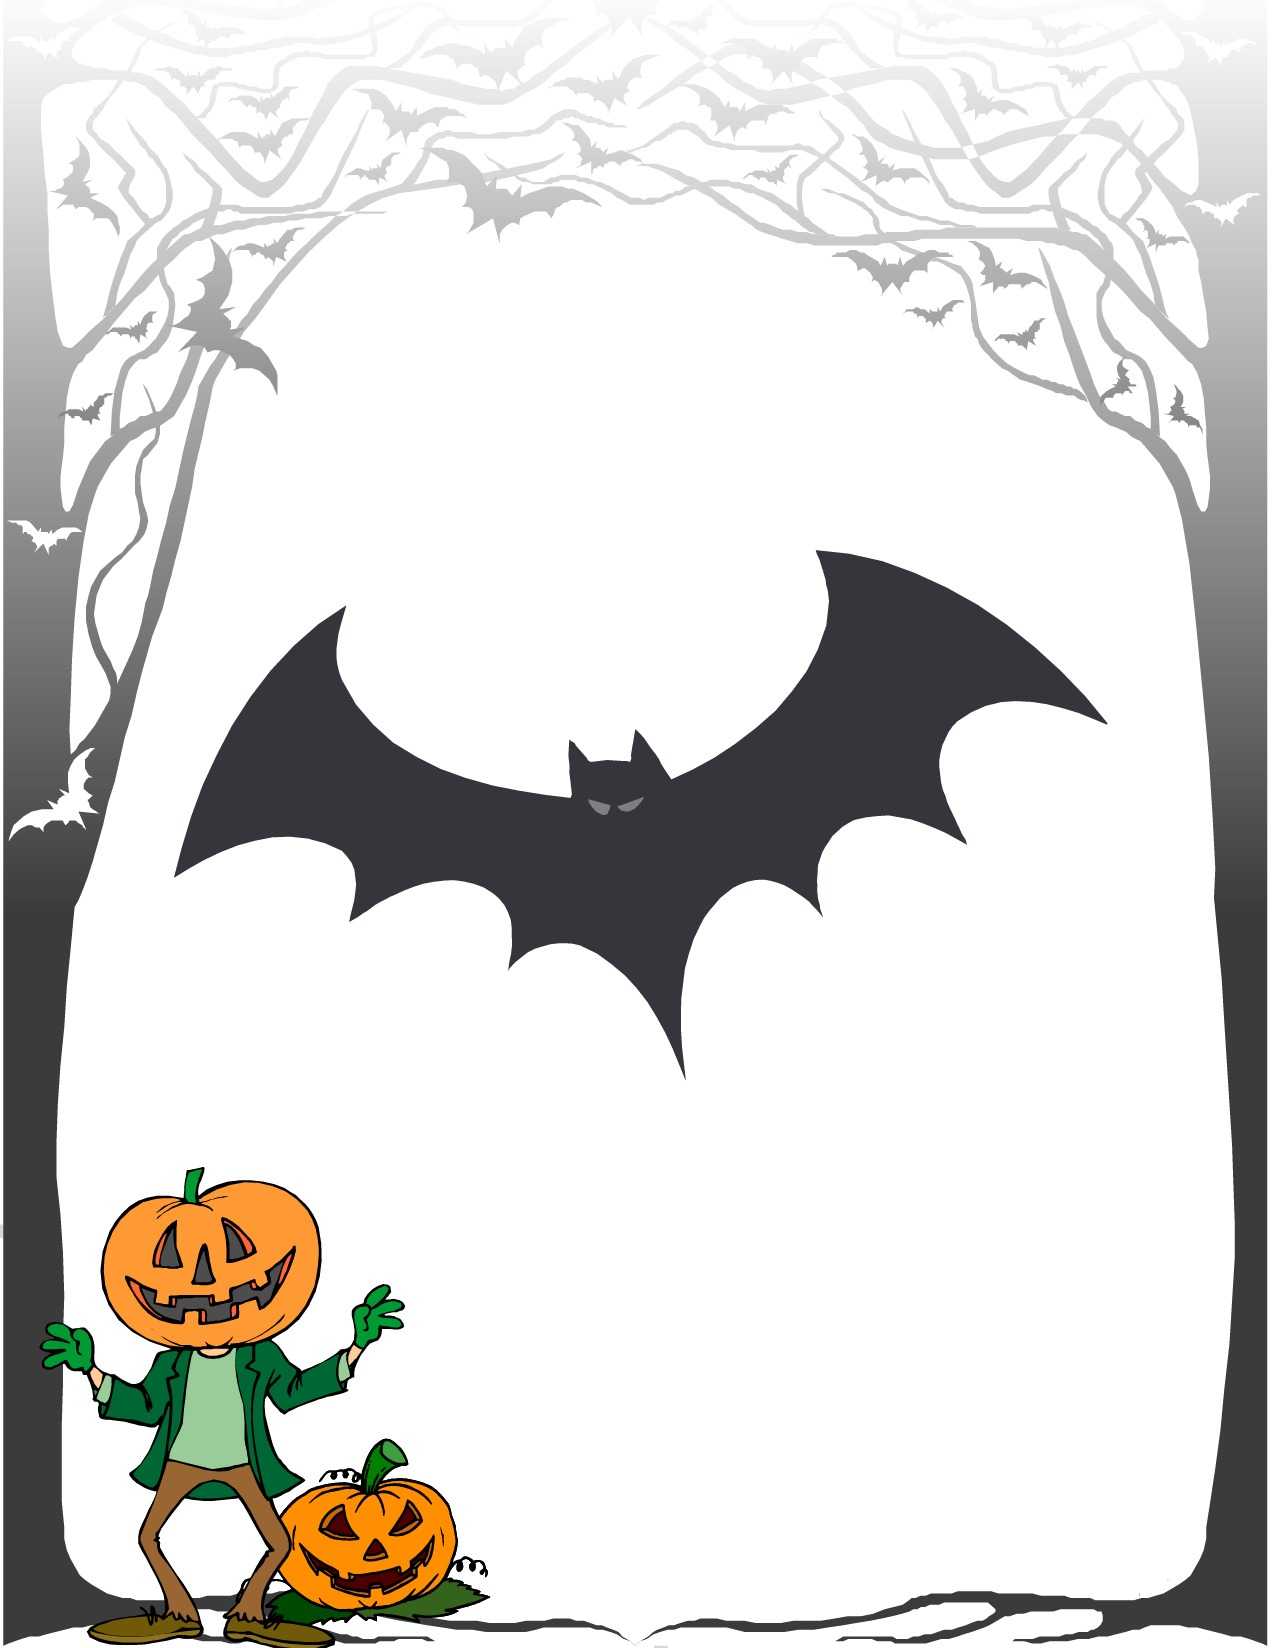 Halloween Award Certificate Maker Intended For Halloween Costume Certificate Template